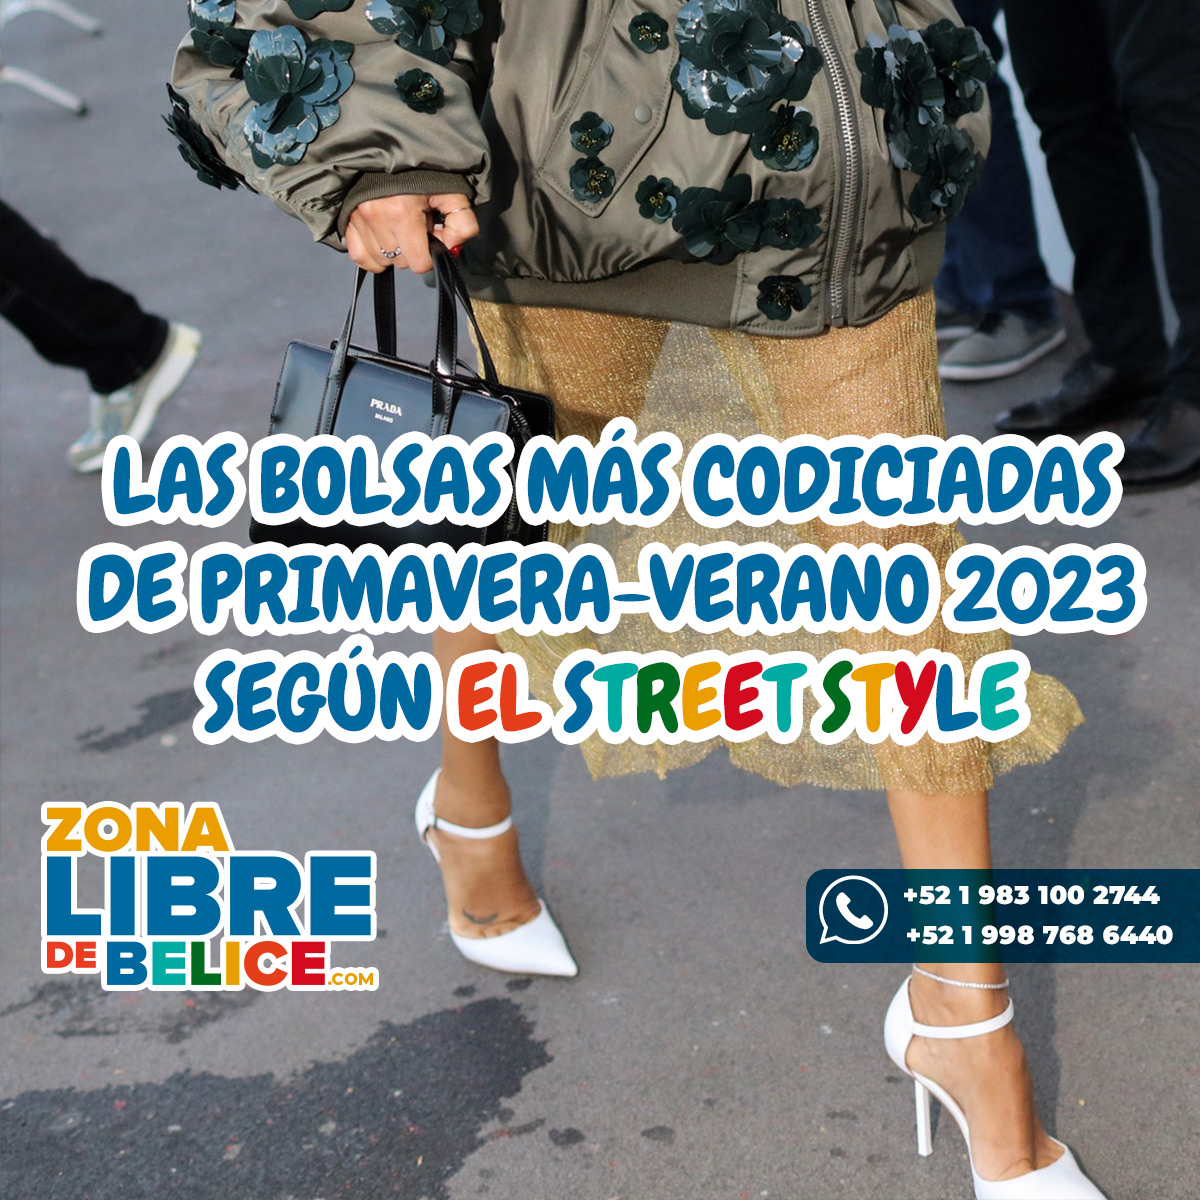 Las bolsas más codiciadas de Primavera-Verano 2023 según el street style